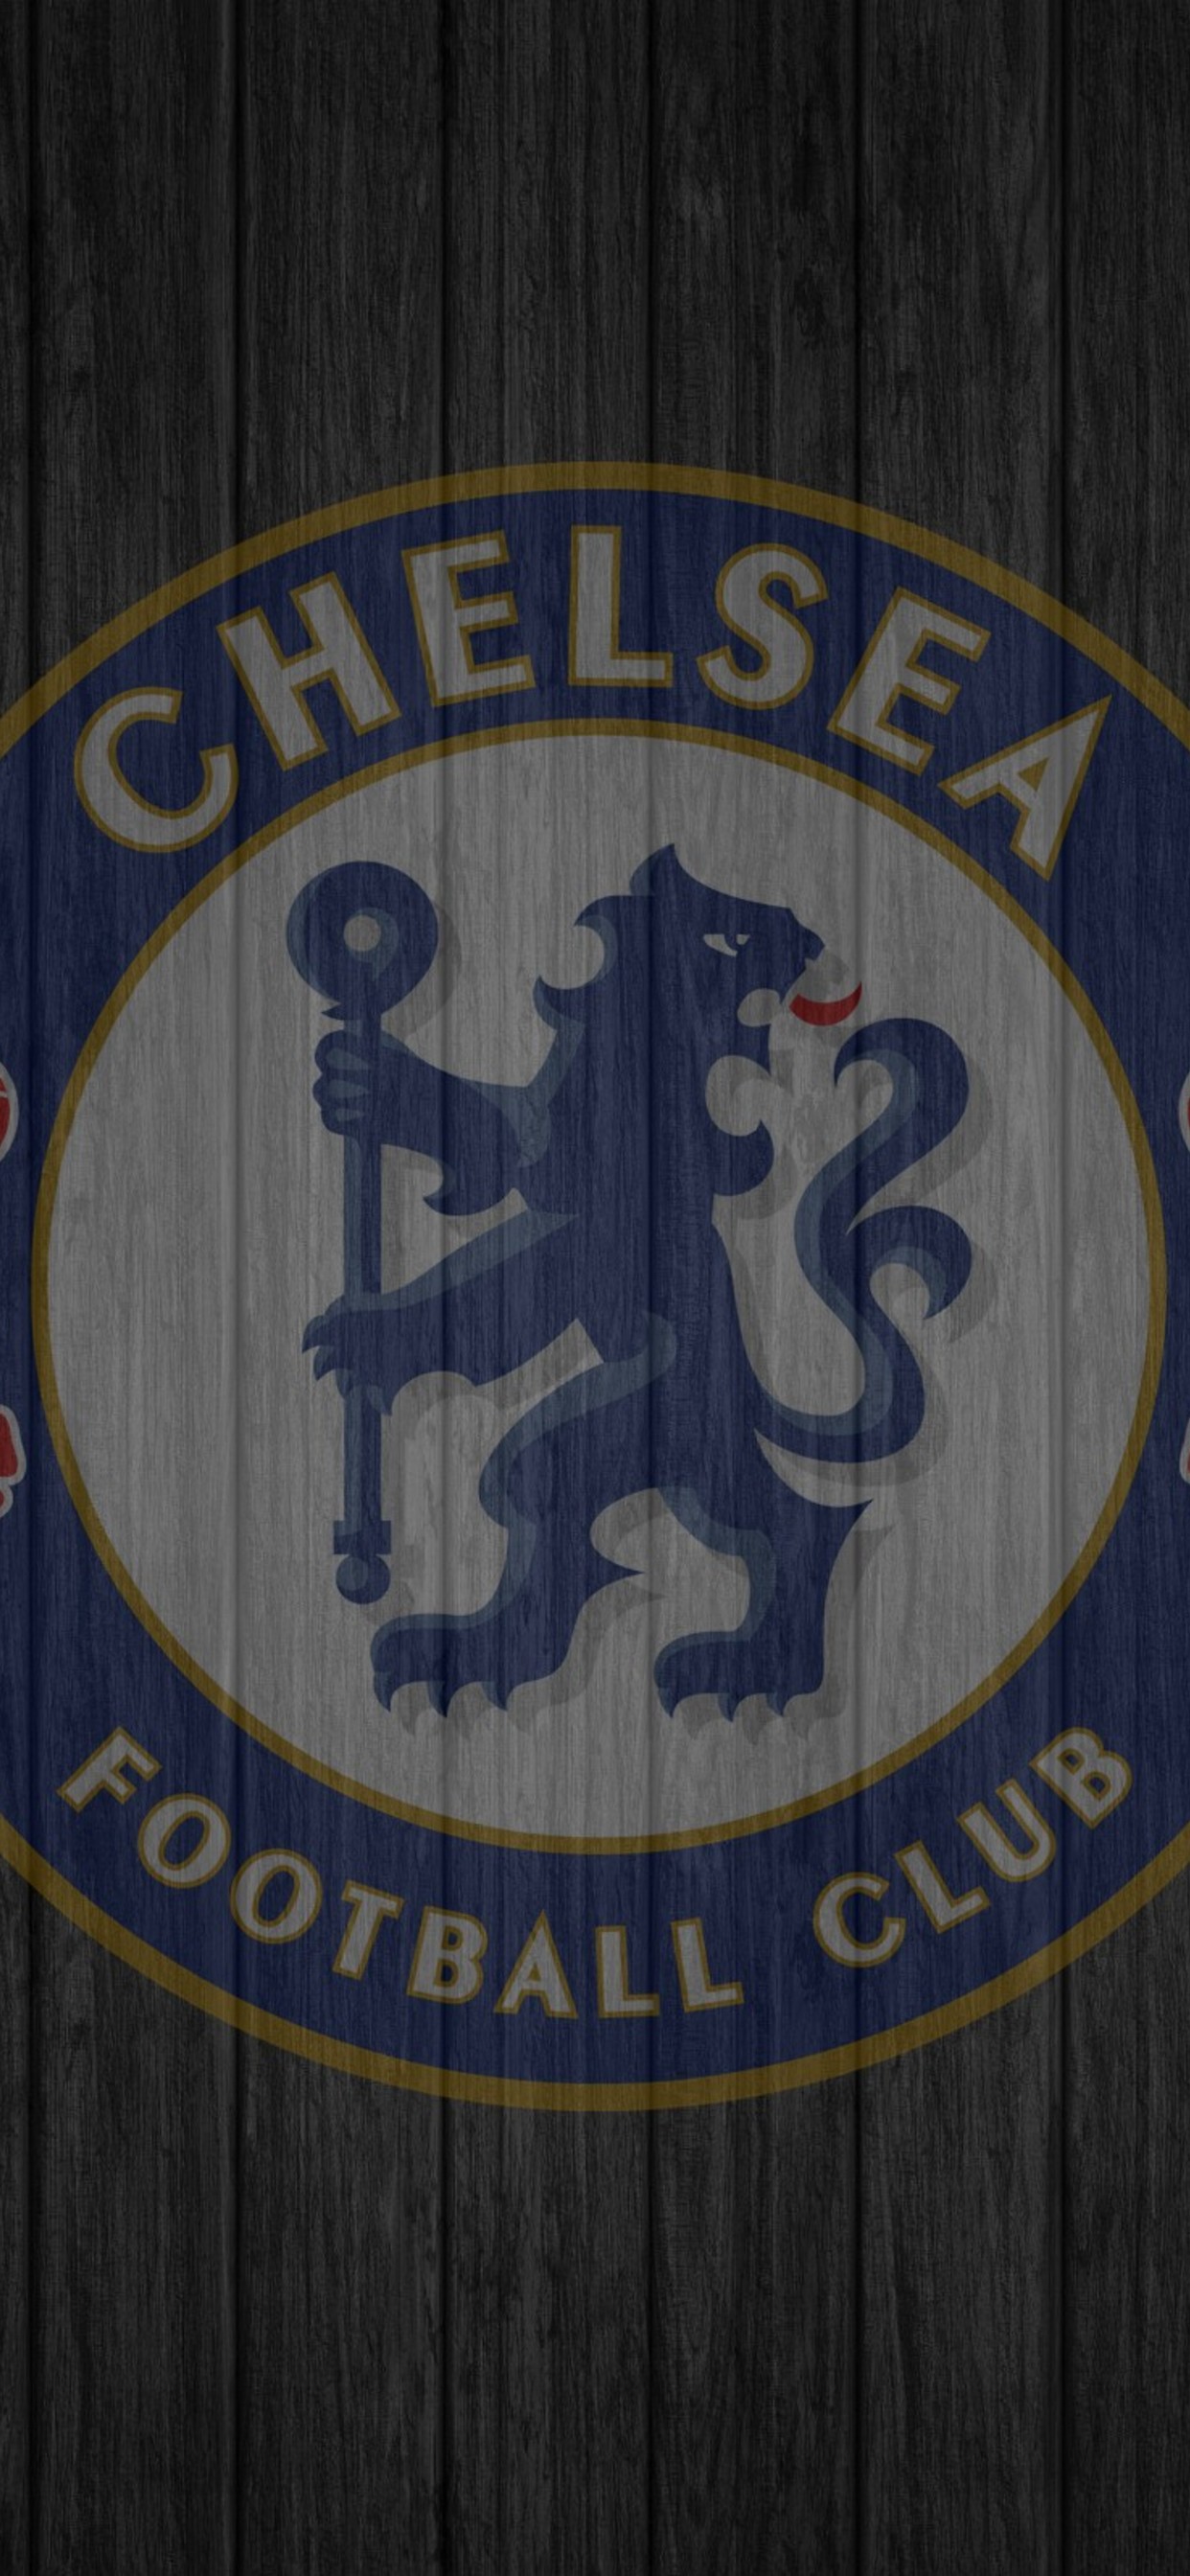 Chelsea Fc - HD Wallpaper 